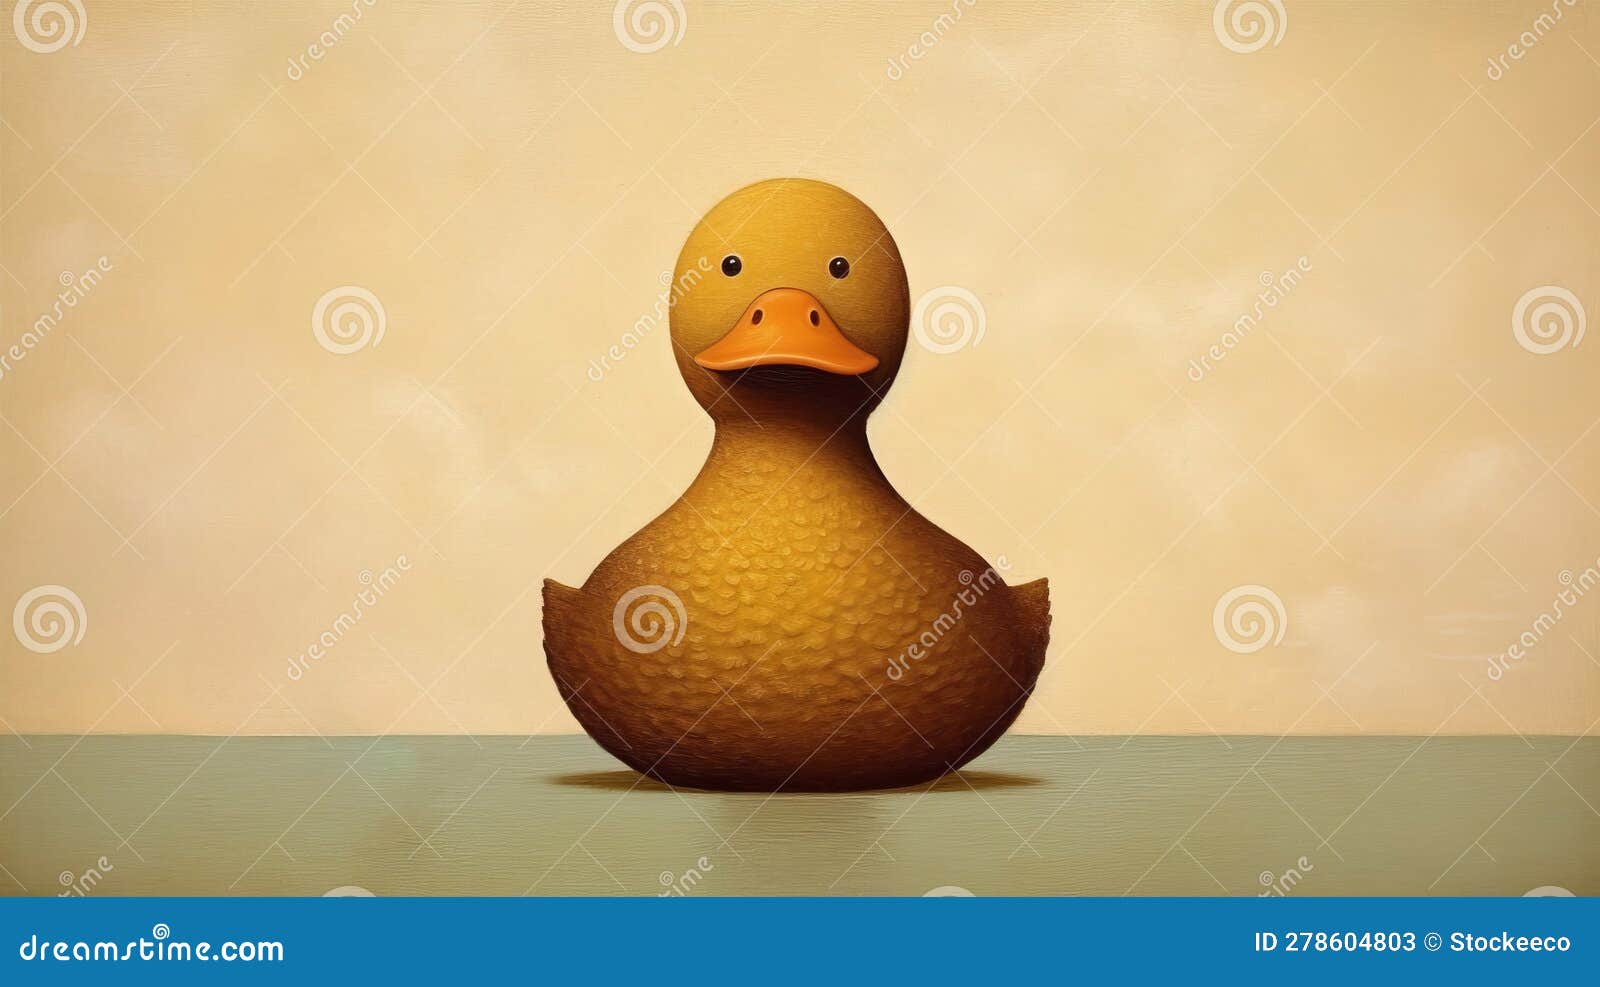 create lowell herrero duck-inspired artwork